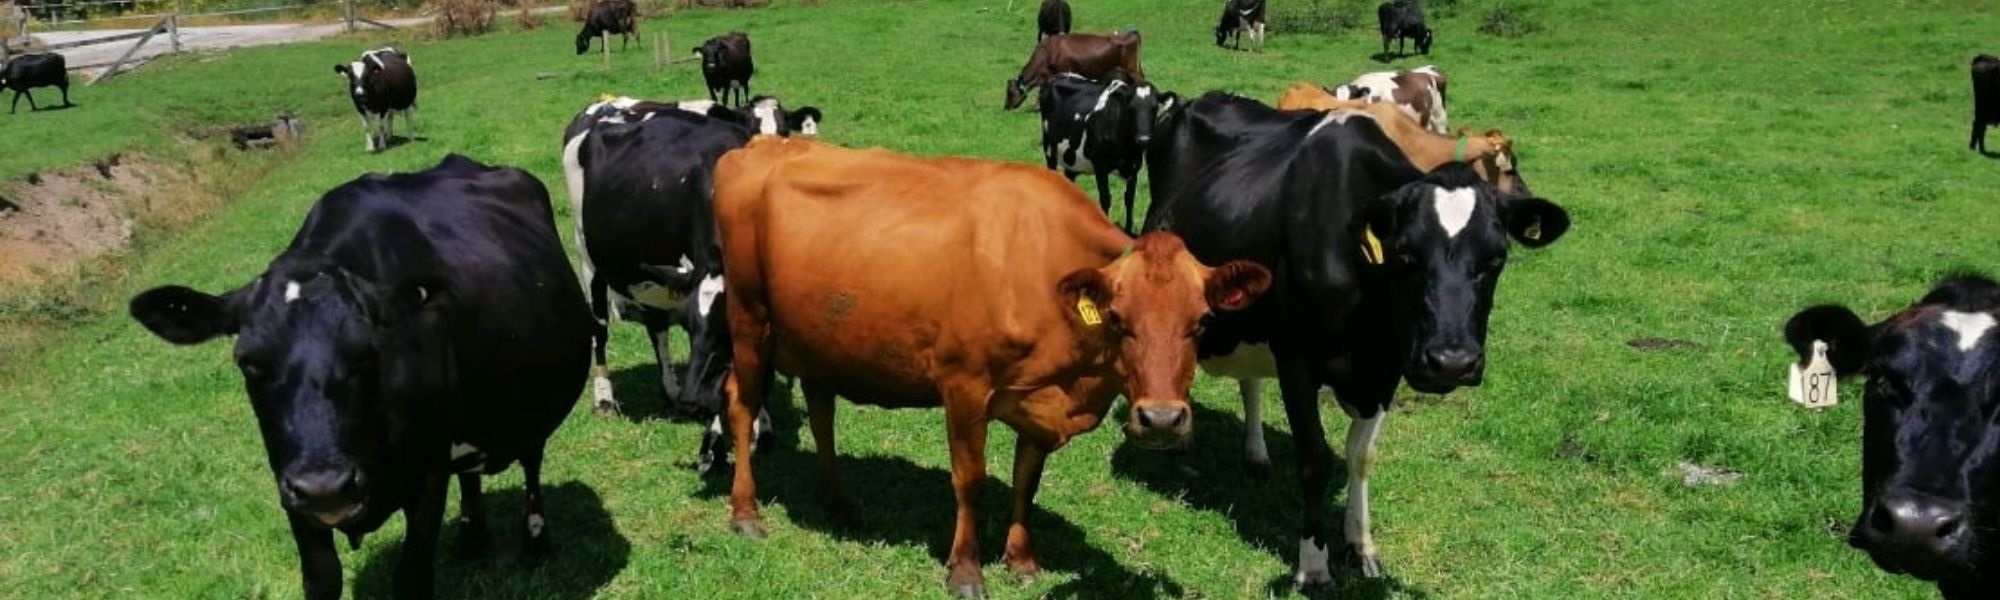 Farming-cows-header-NDDT.jpg